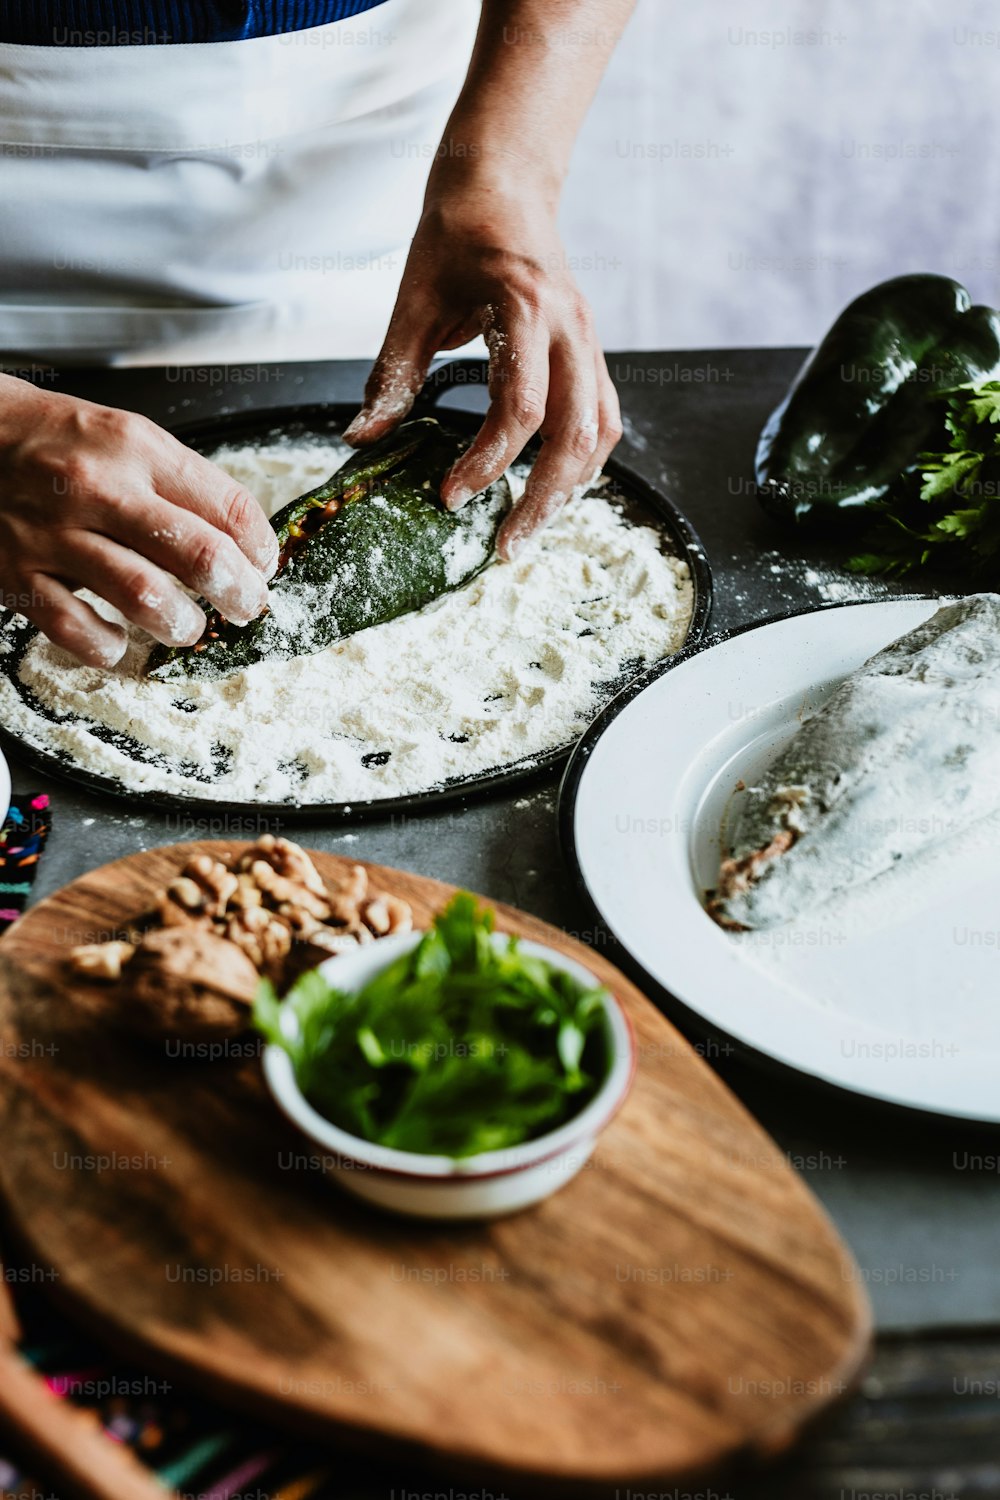 メキシコの伝統的な料理であるポブラノ唐辛子と食材を使って女性の手でメキシコのボロボロ唐辛子を調理するノガダレシピ